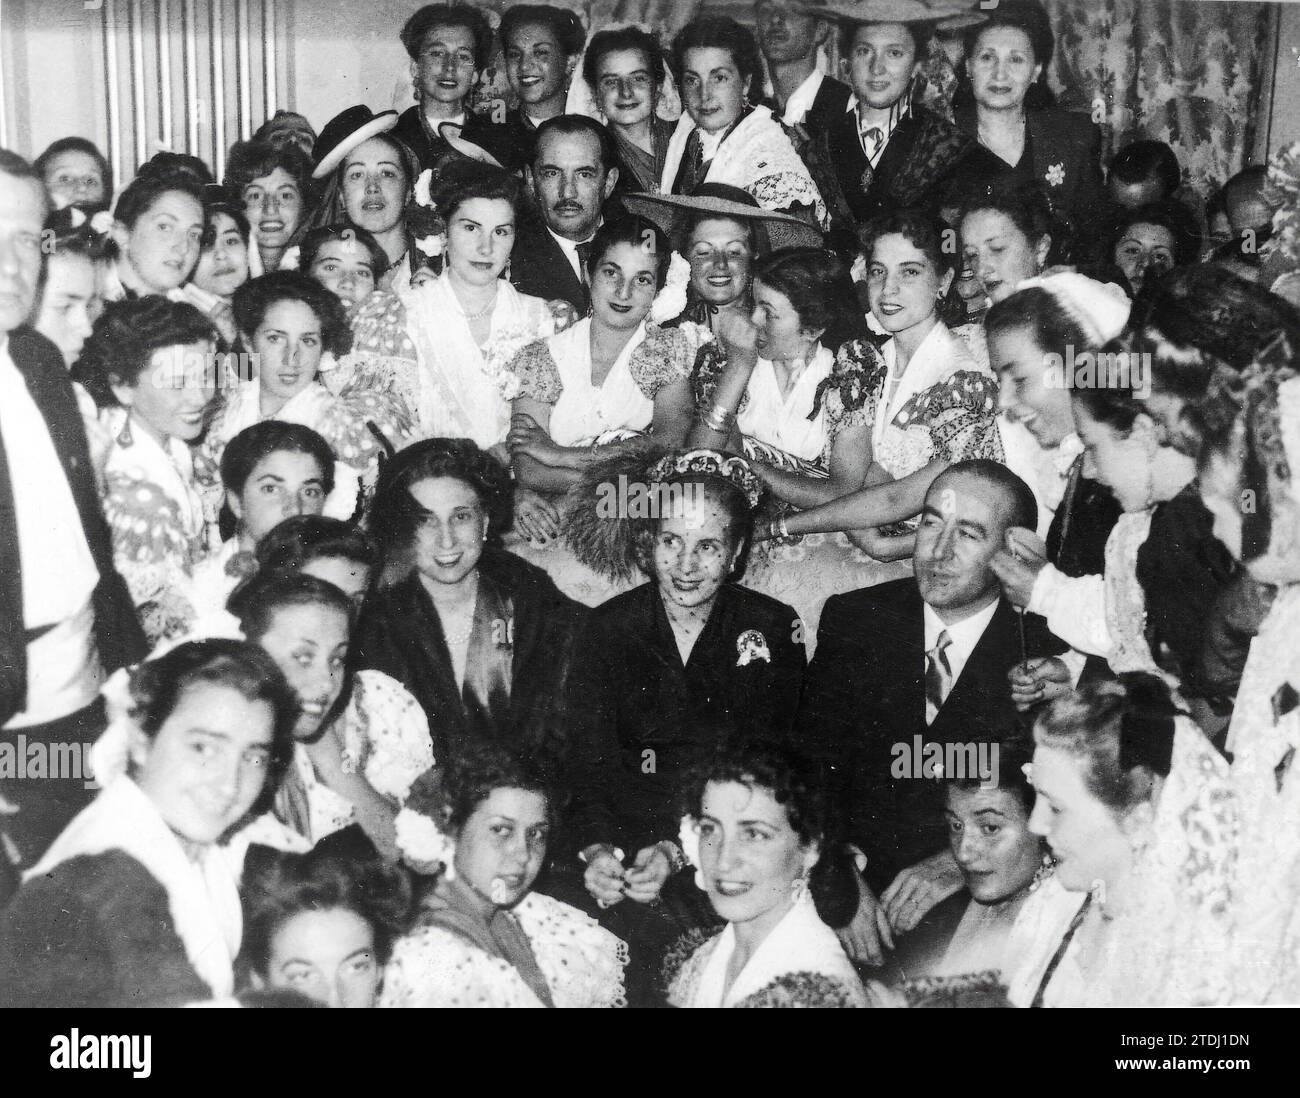 12/31/1947. Foto di gruppo in cui appaiono i politici Eva Duarte de Perón e José María de Areilza. Crediti: Album / Archivo ABC Foto Stock